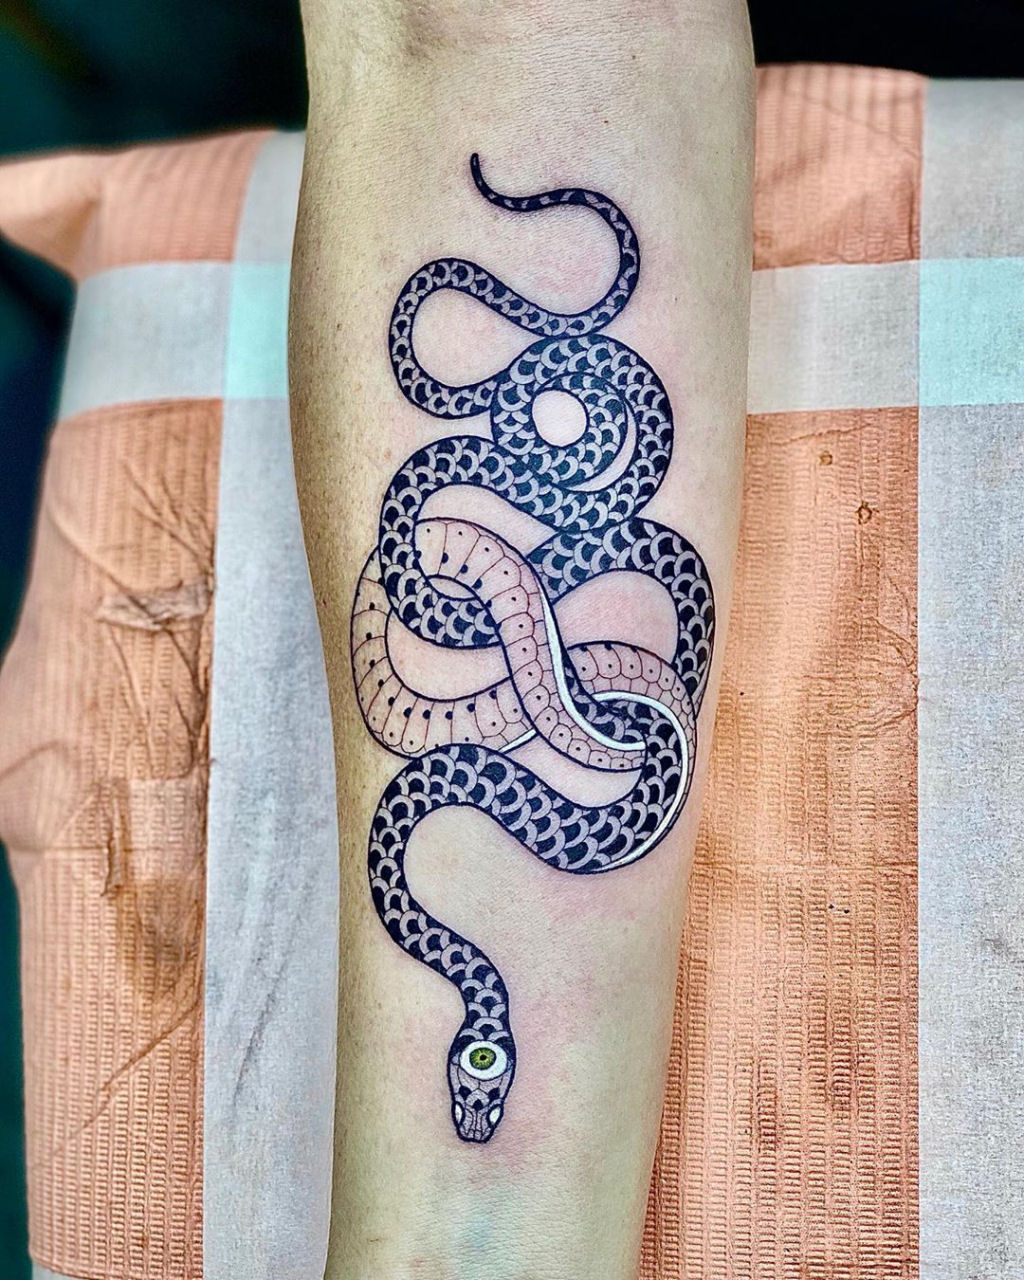 Tatuagens viperinas com tinta branca e preta, por Mirko Sata 19